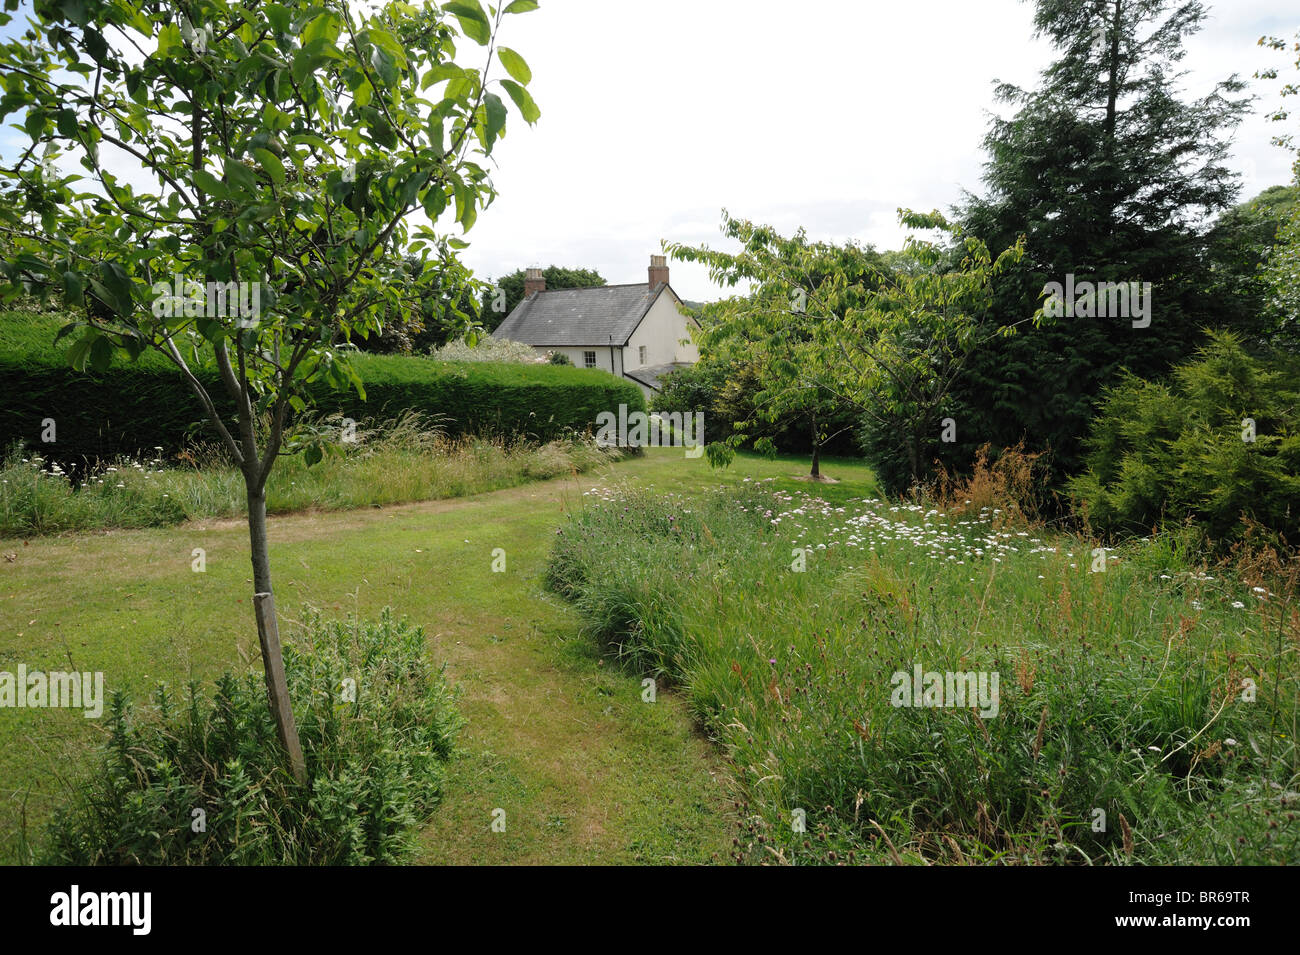 Natürliche umweltfreundliche Wiese Garten mit Obstbäumen und Wege für den Zugang Stockfoto